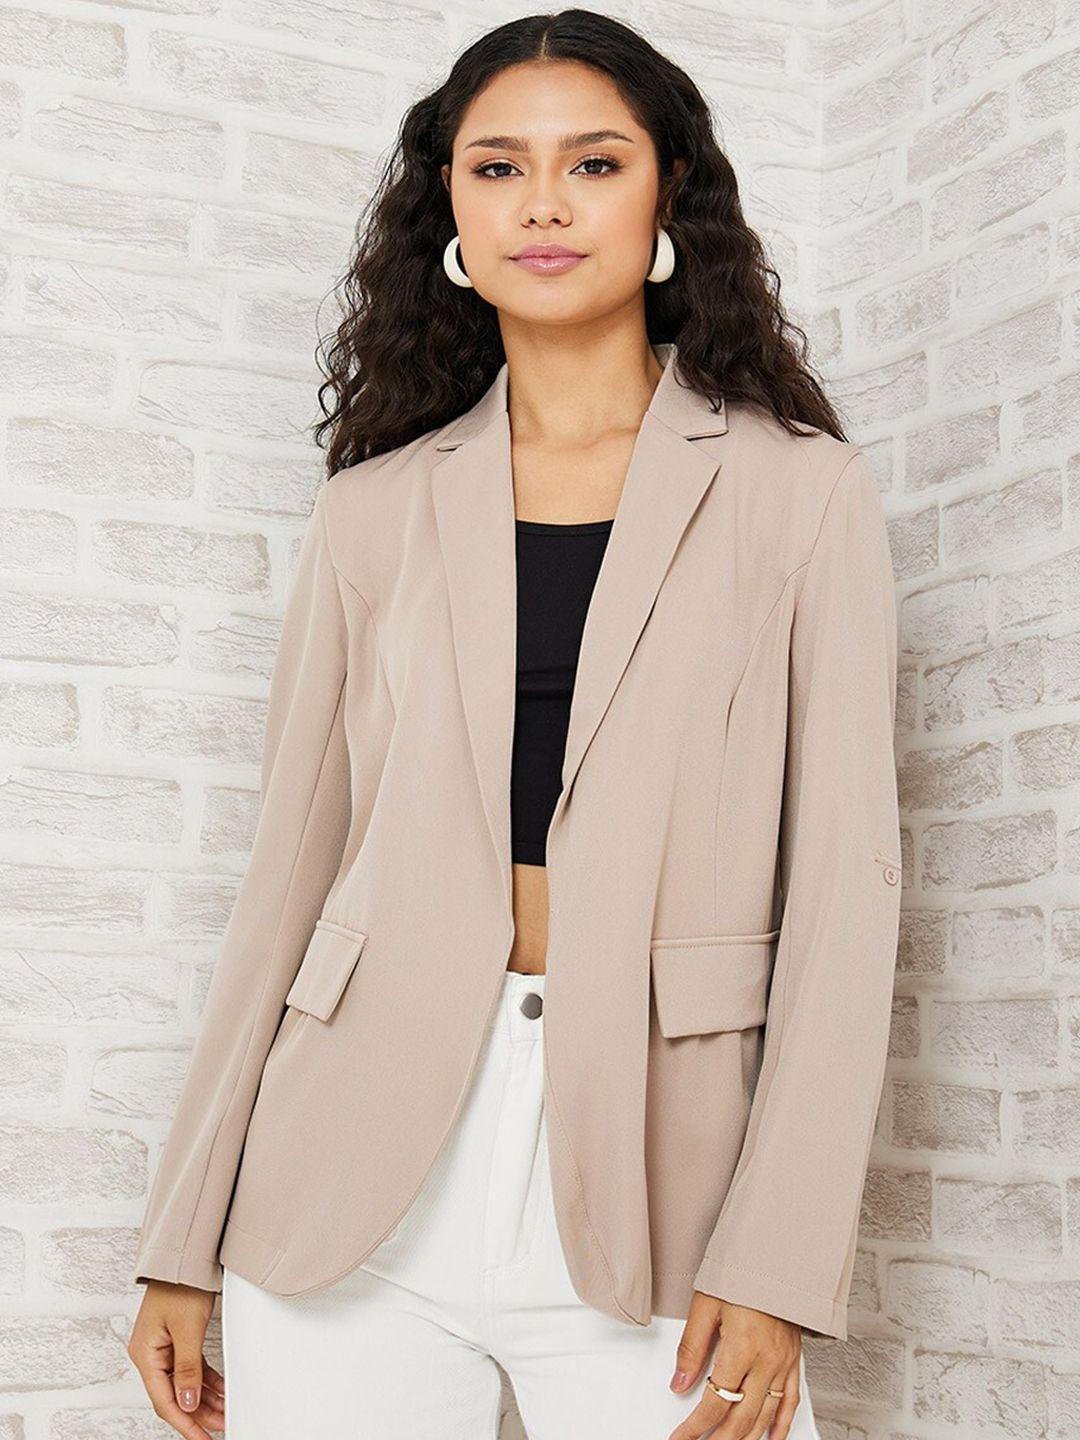 styli-women-beige-solid-roll-up-sleeves-open-front-regular-fit-longline-blazer